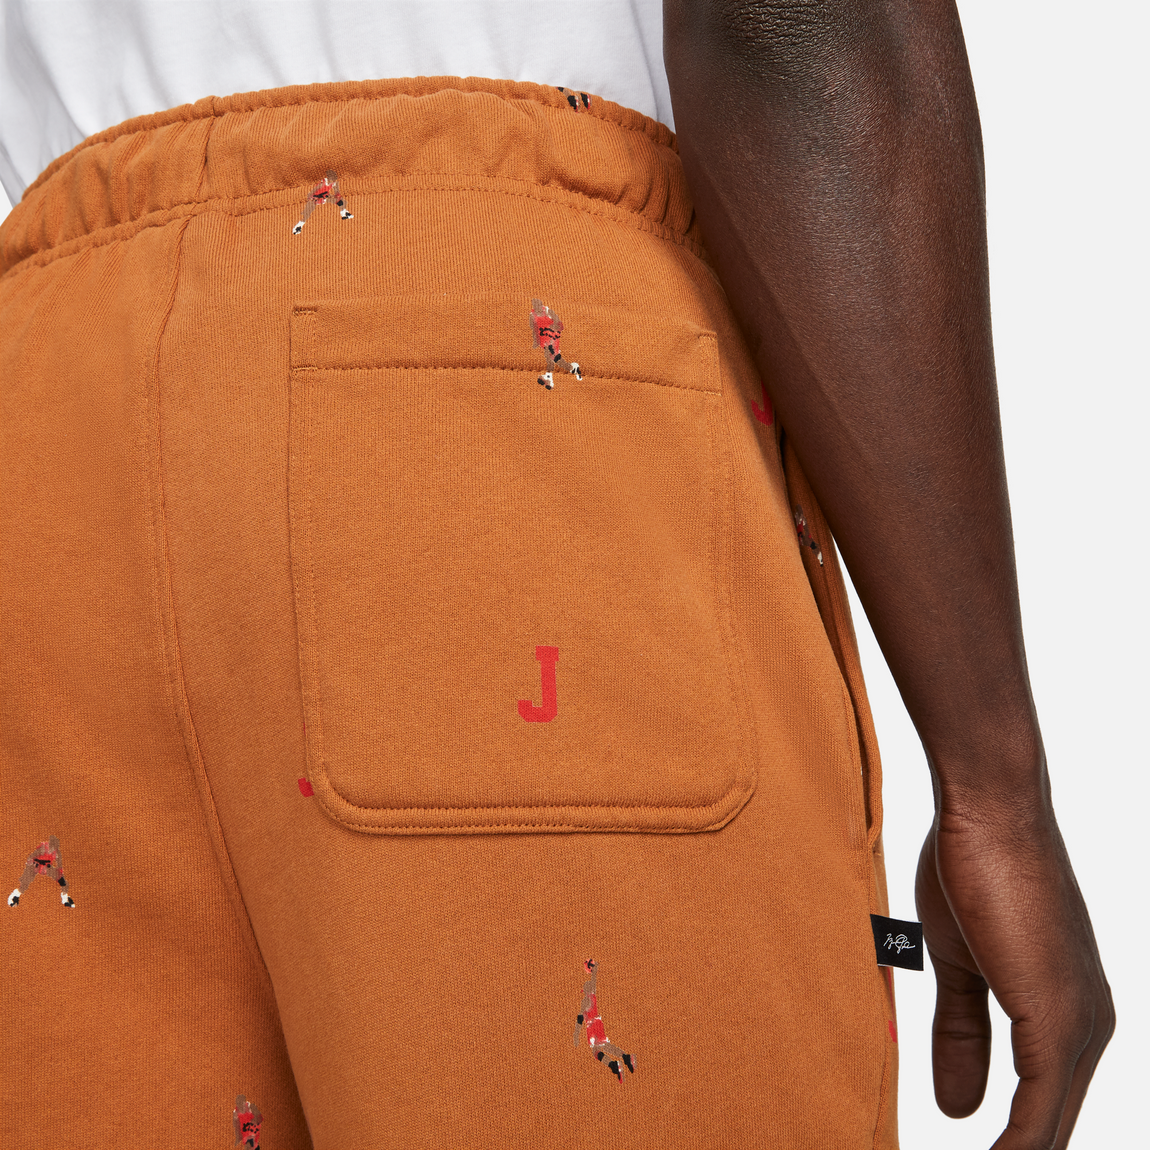 Jordan Essentials Printed Fleece Pants (Desert Bronze) - Jordan Essentials Printed Fleece Pants (Desert Bronze) - 